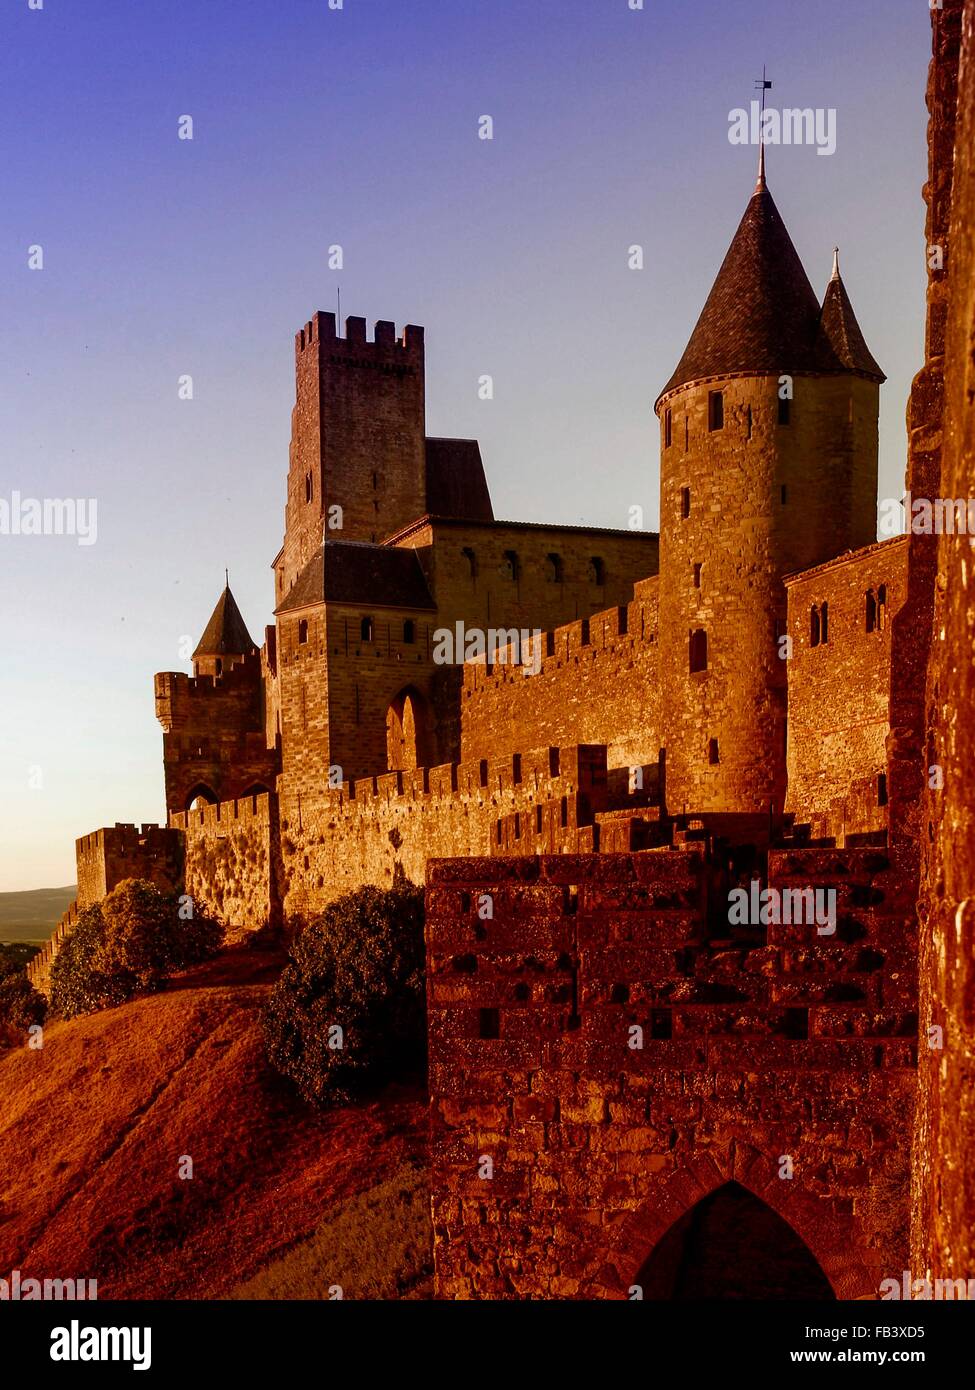 Mittelalterliche Festungsstadt Carcassonne, Frankreich, Languedoc Roussillon, Carcassonne Stock Photo